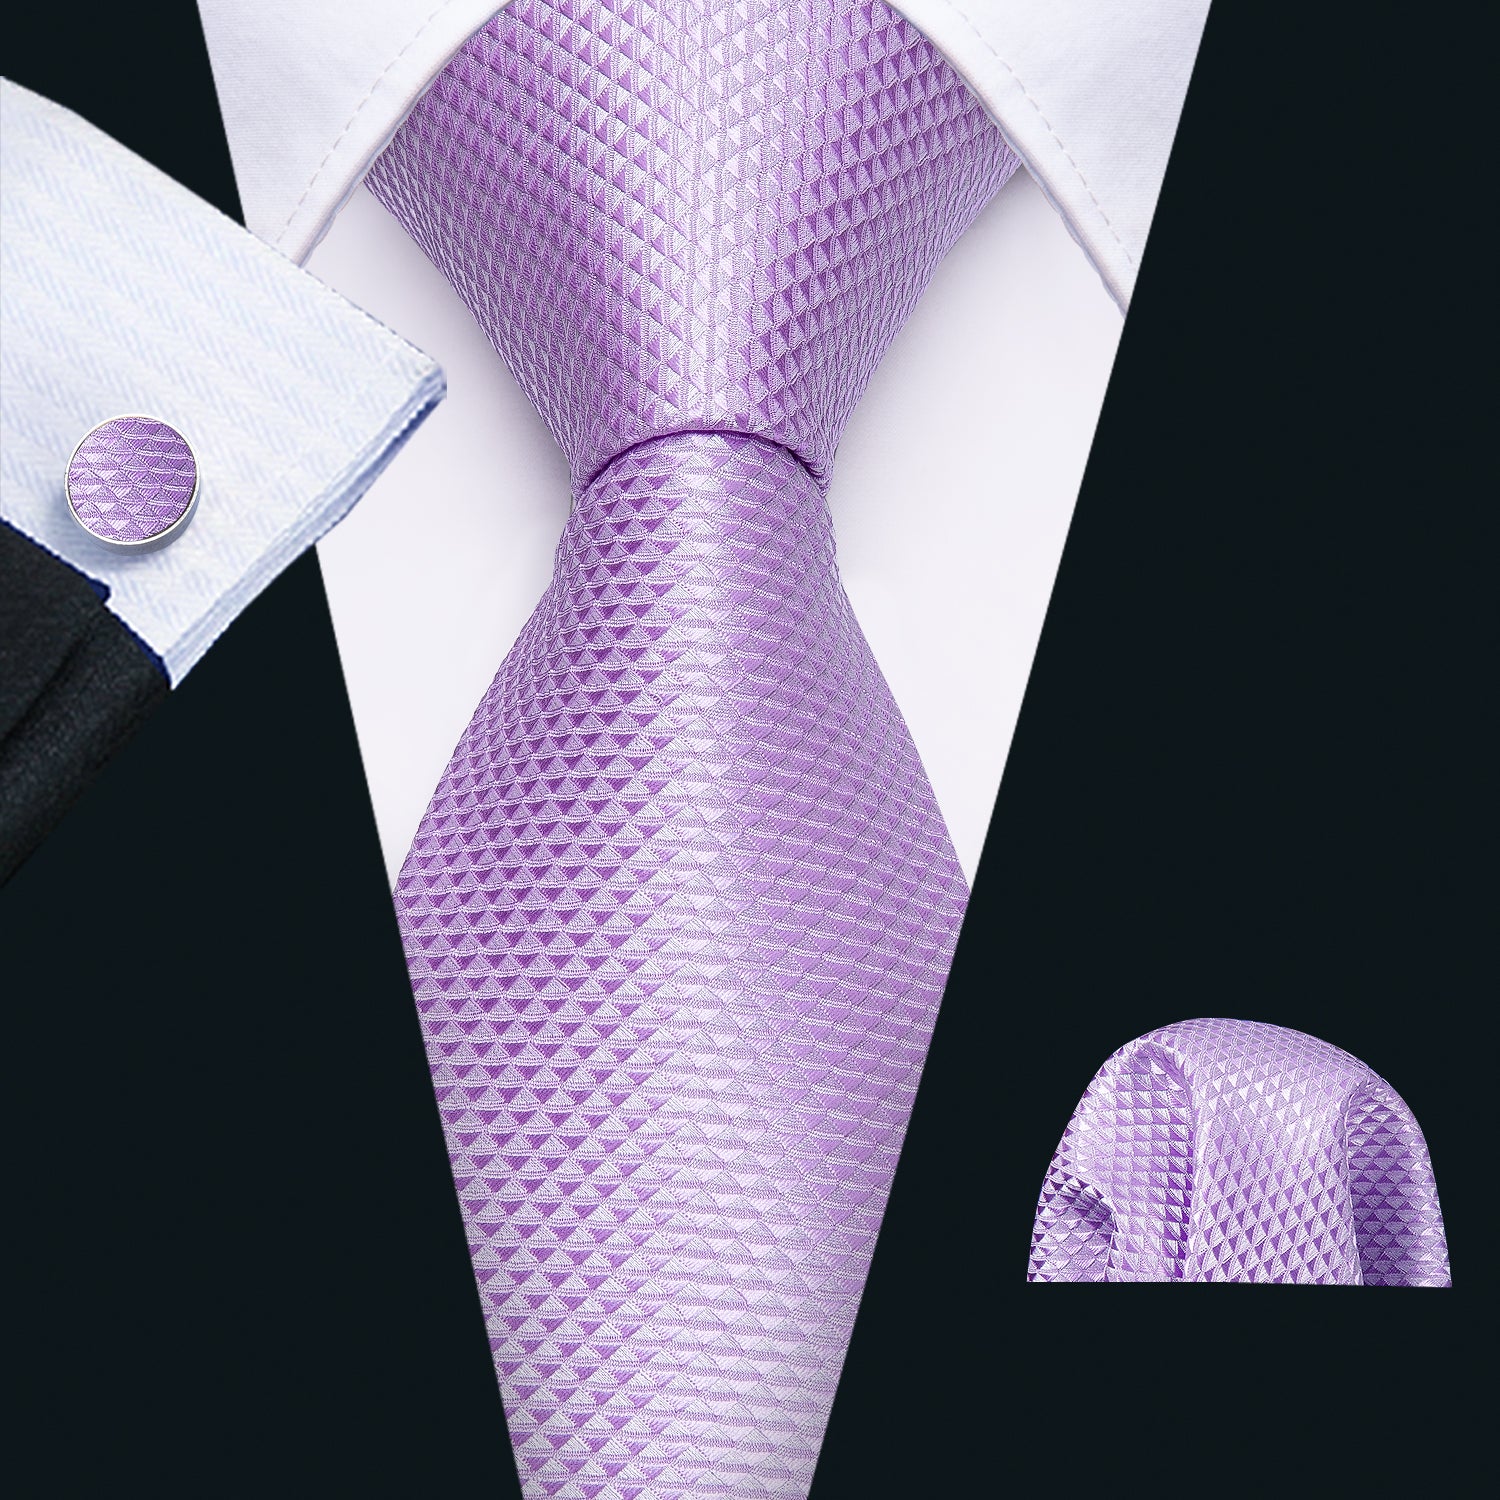 Barry.wang Men's Tie Light Purple Geometric Tie Hanky Cufflinks Set